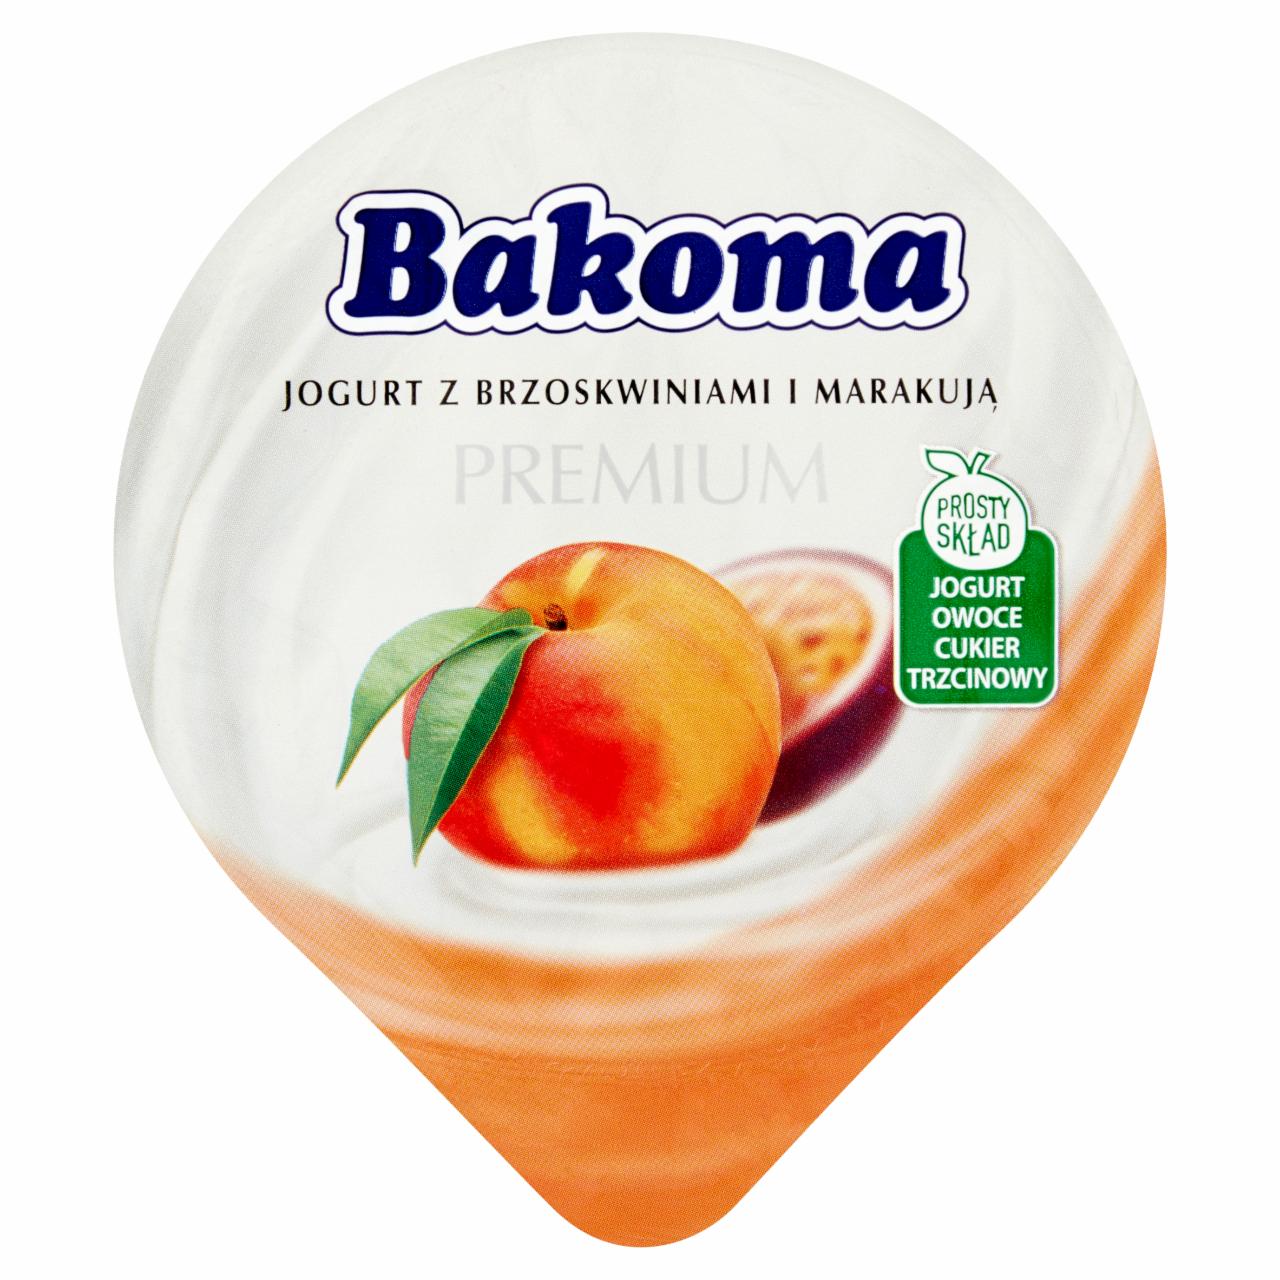 Zdjęcia - Bakoma Premium Jogurt z brzoskwiniami i marakują 140 g